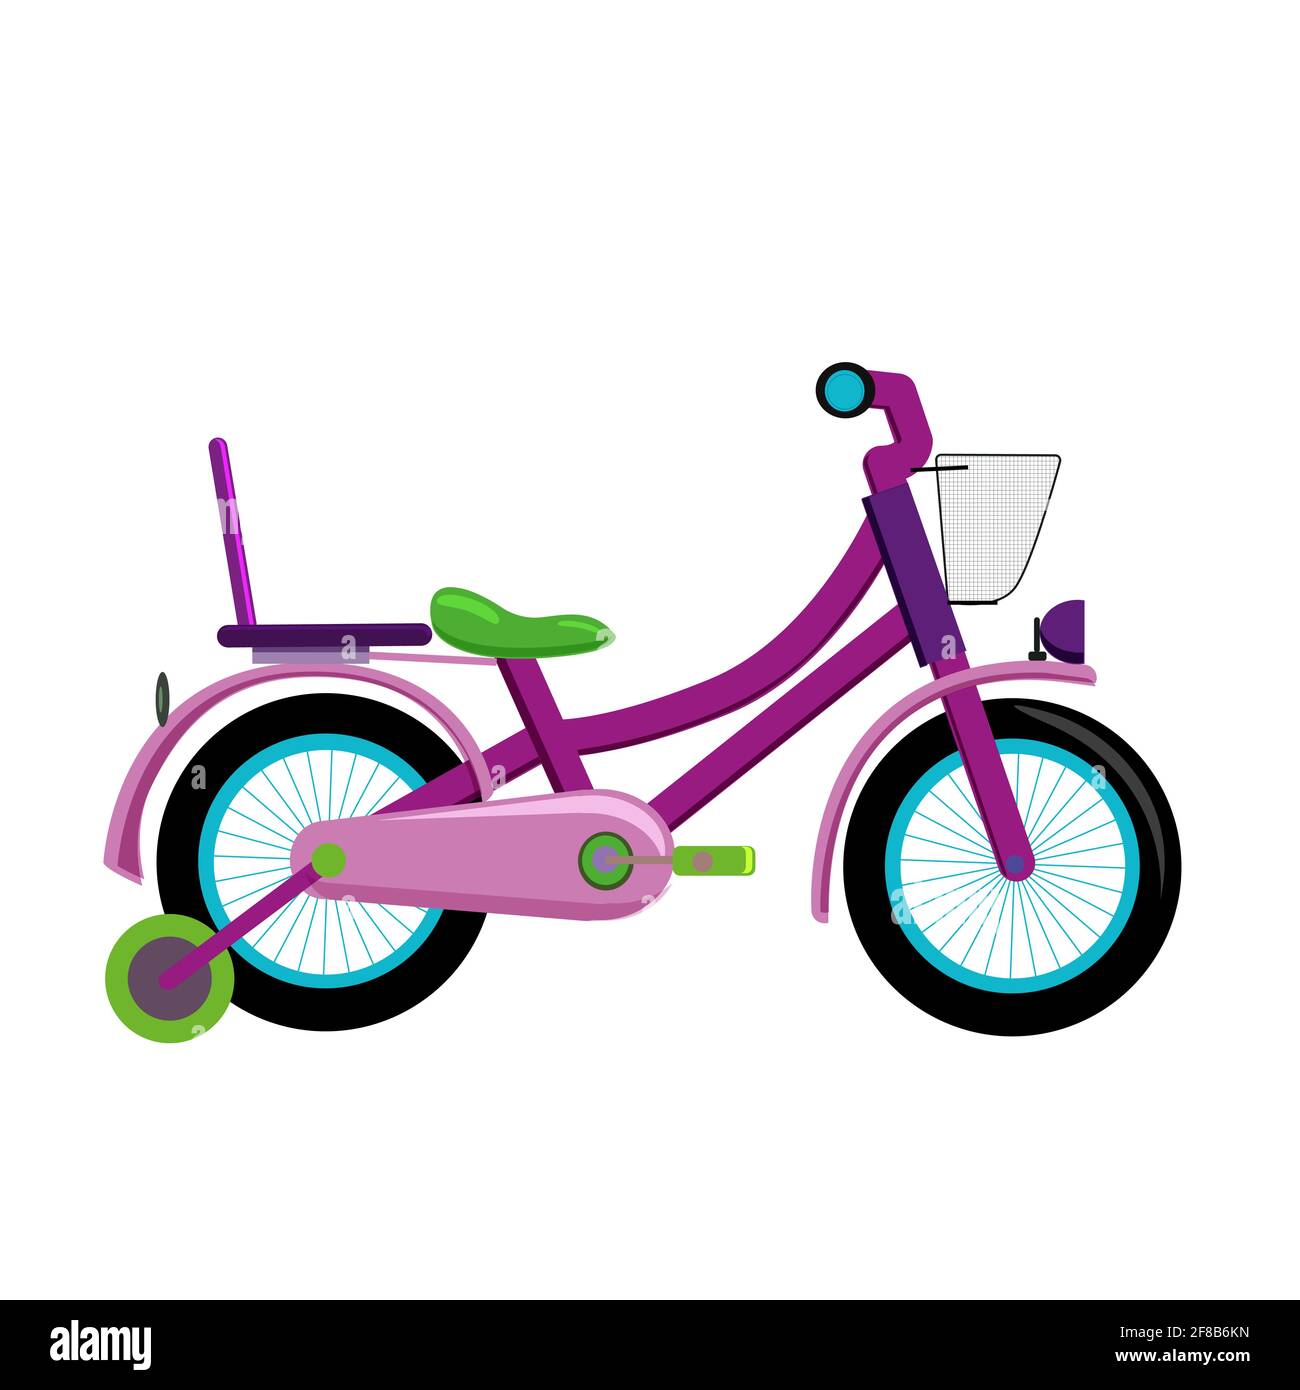 immagini per bambini di biciclette con spiegazione di ogni pezzo